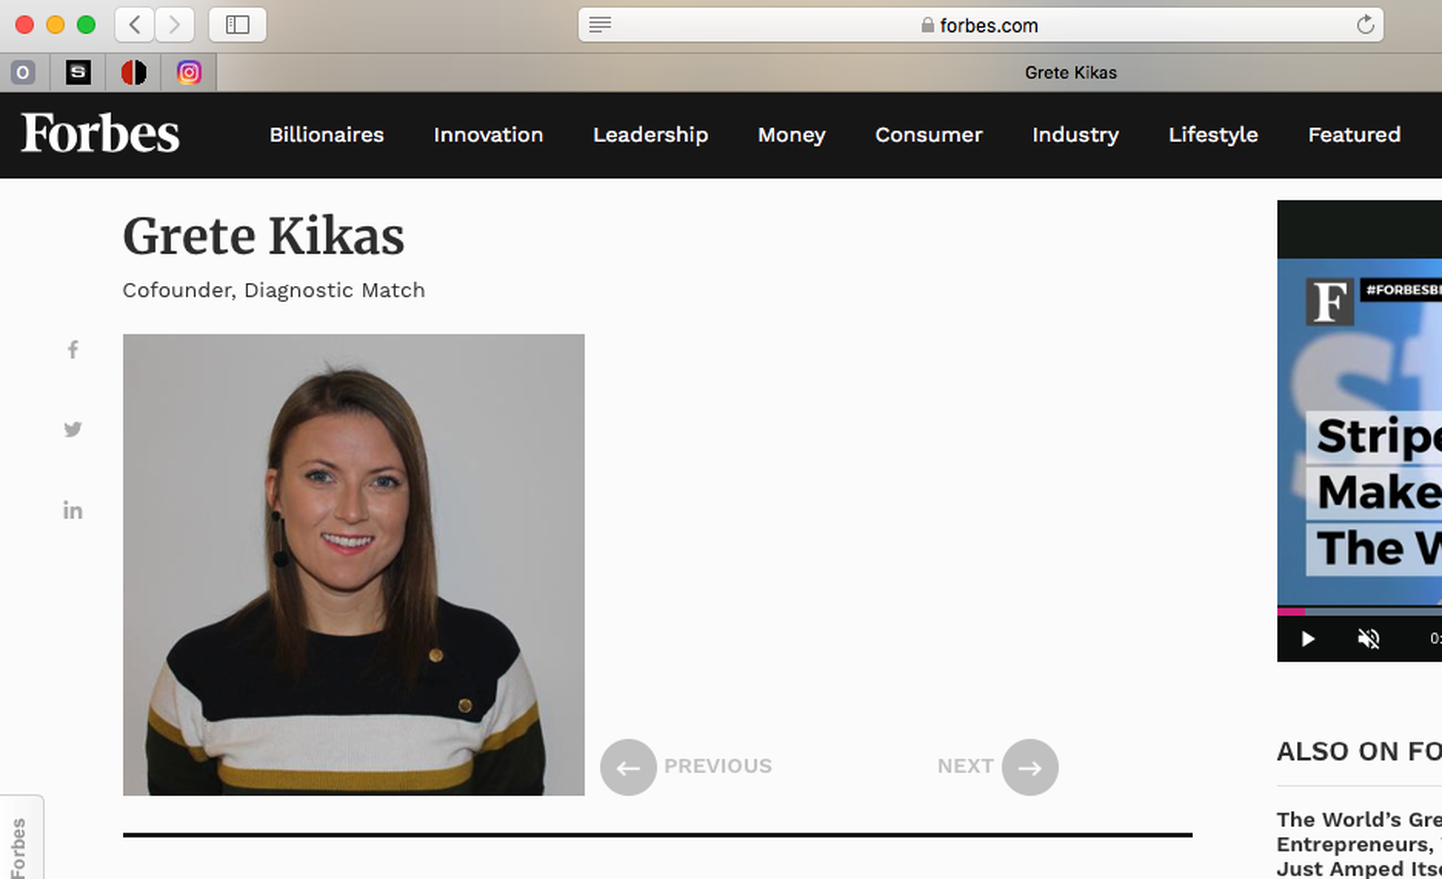 Kuvatõmmis Forbes.com lehelt: Grete Kikas pildil.